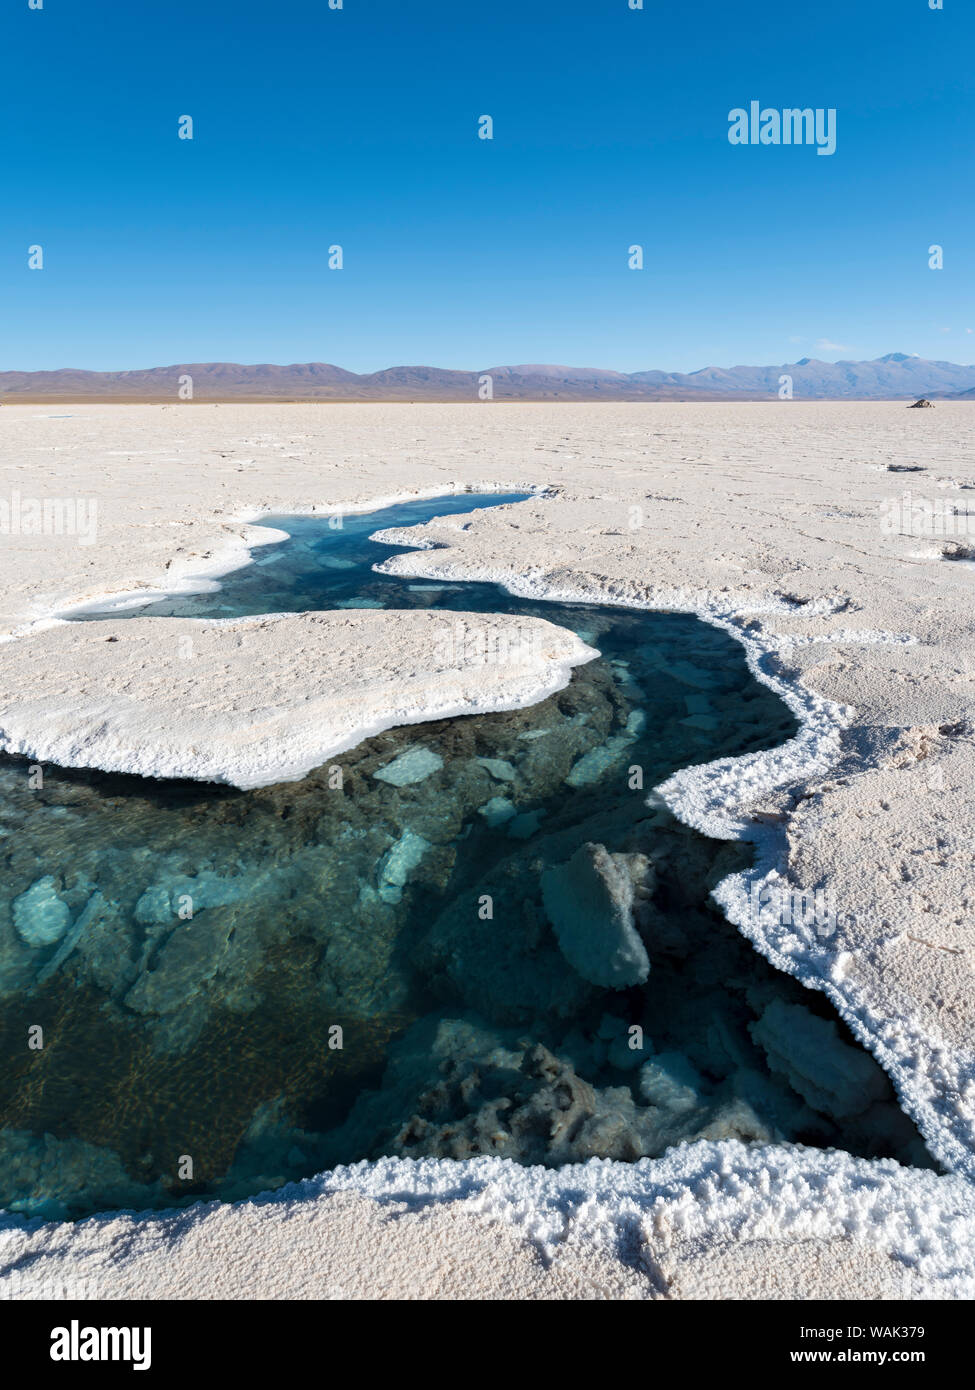 Ojos del Salar, étangs d'eaux souterraines et la surface du Salar. Paysage sur la saline Salar Salinas Grandes dans l'Altiplano, de l'Argentine. (Usage éditorial uniquement) Banque D'Images